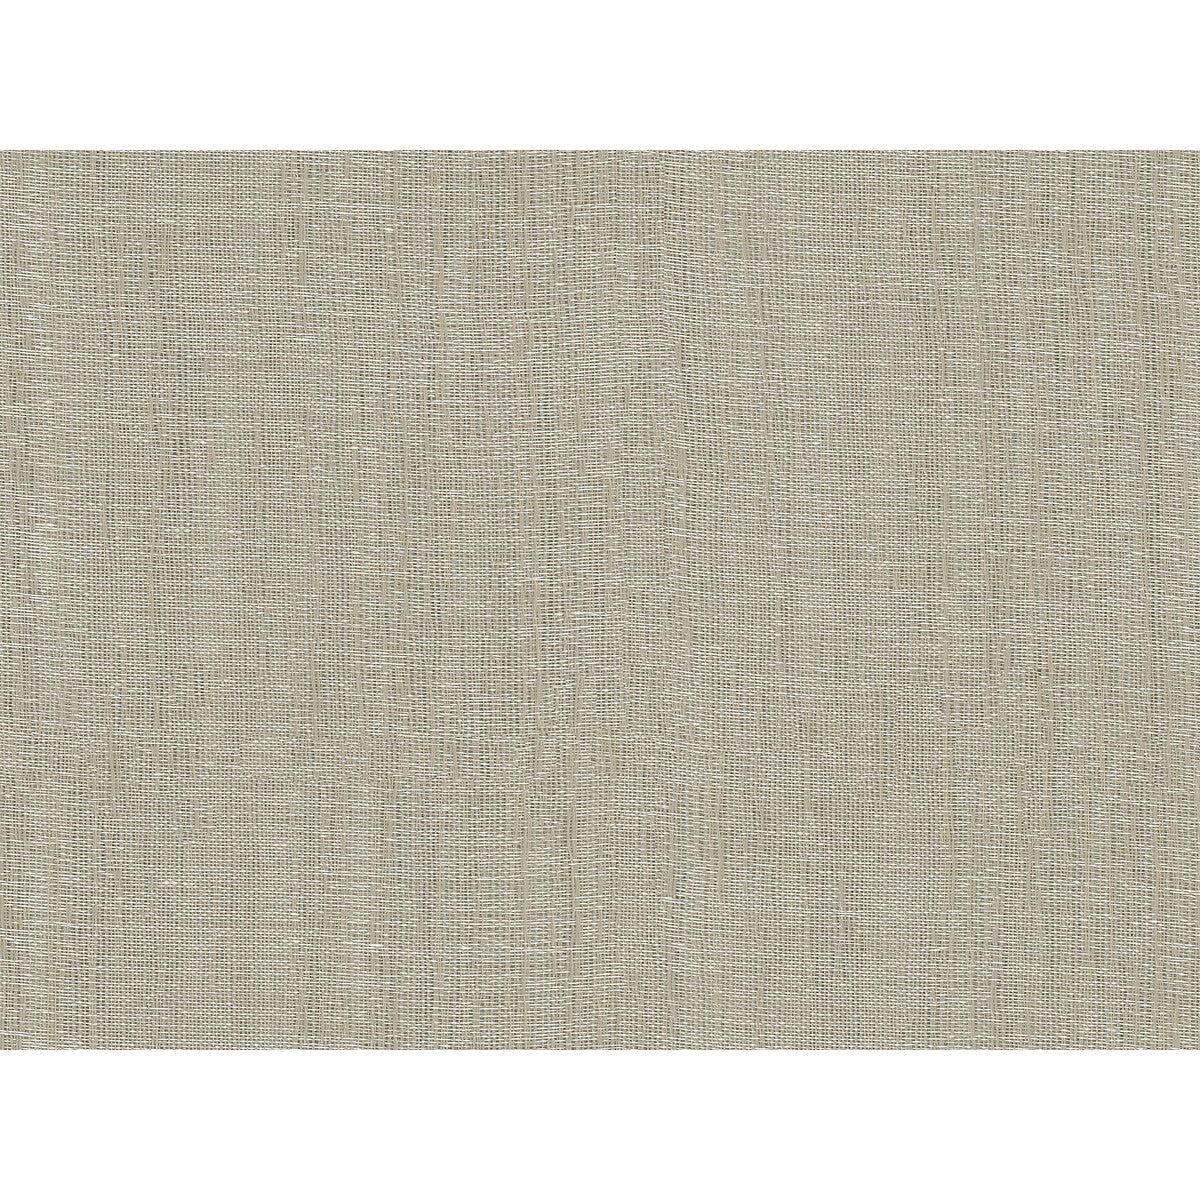 Kravet Basics fabric in 4516-16 color - pattern 4516.16.0 - by Kravet Basics